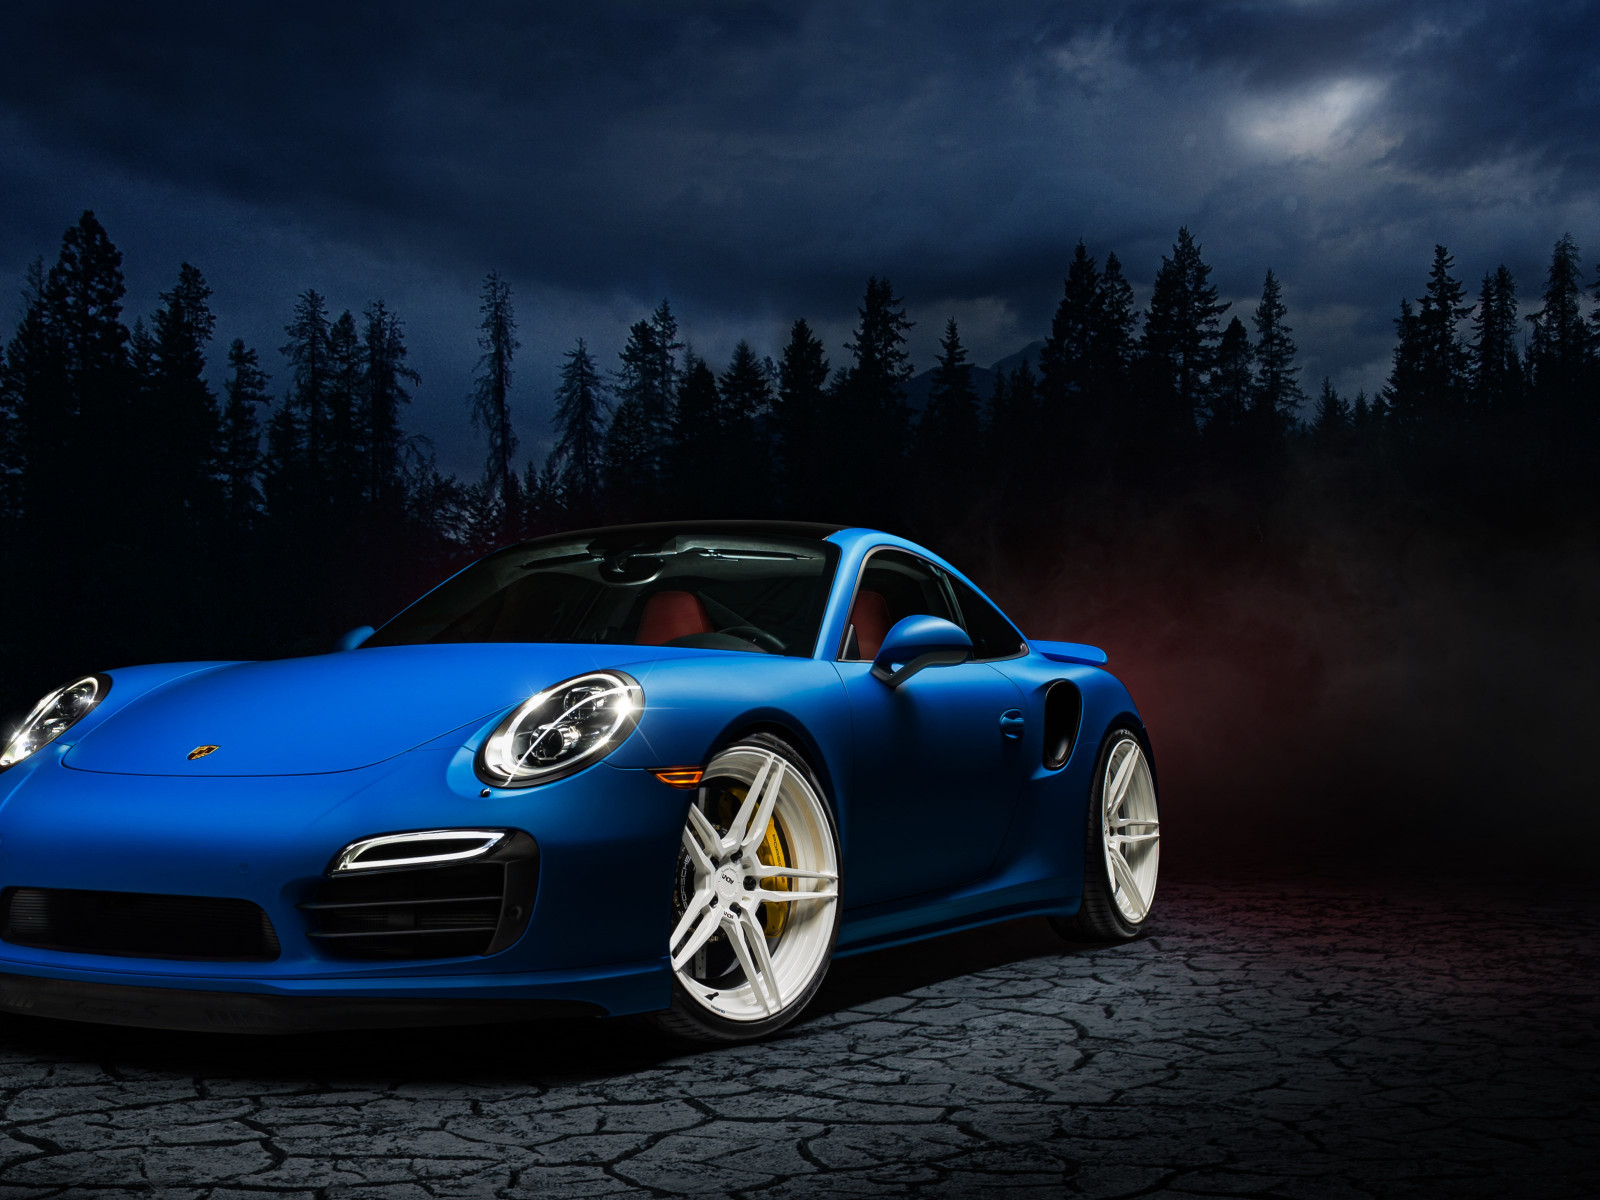 Porsche 911 blue wallpaper 1600x1200